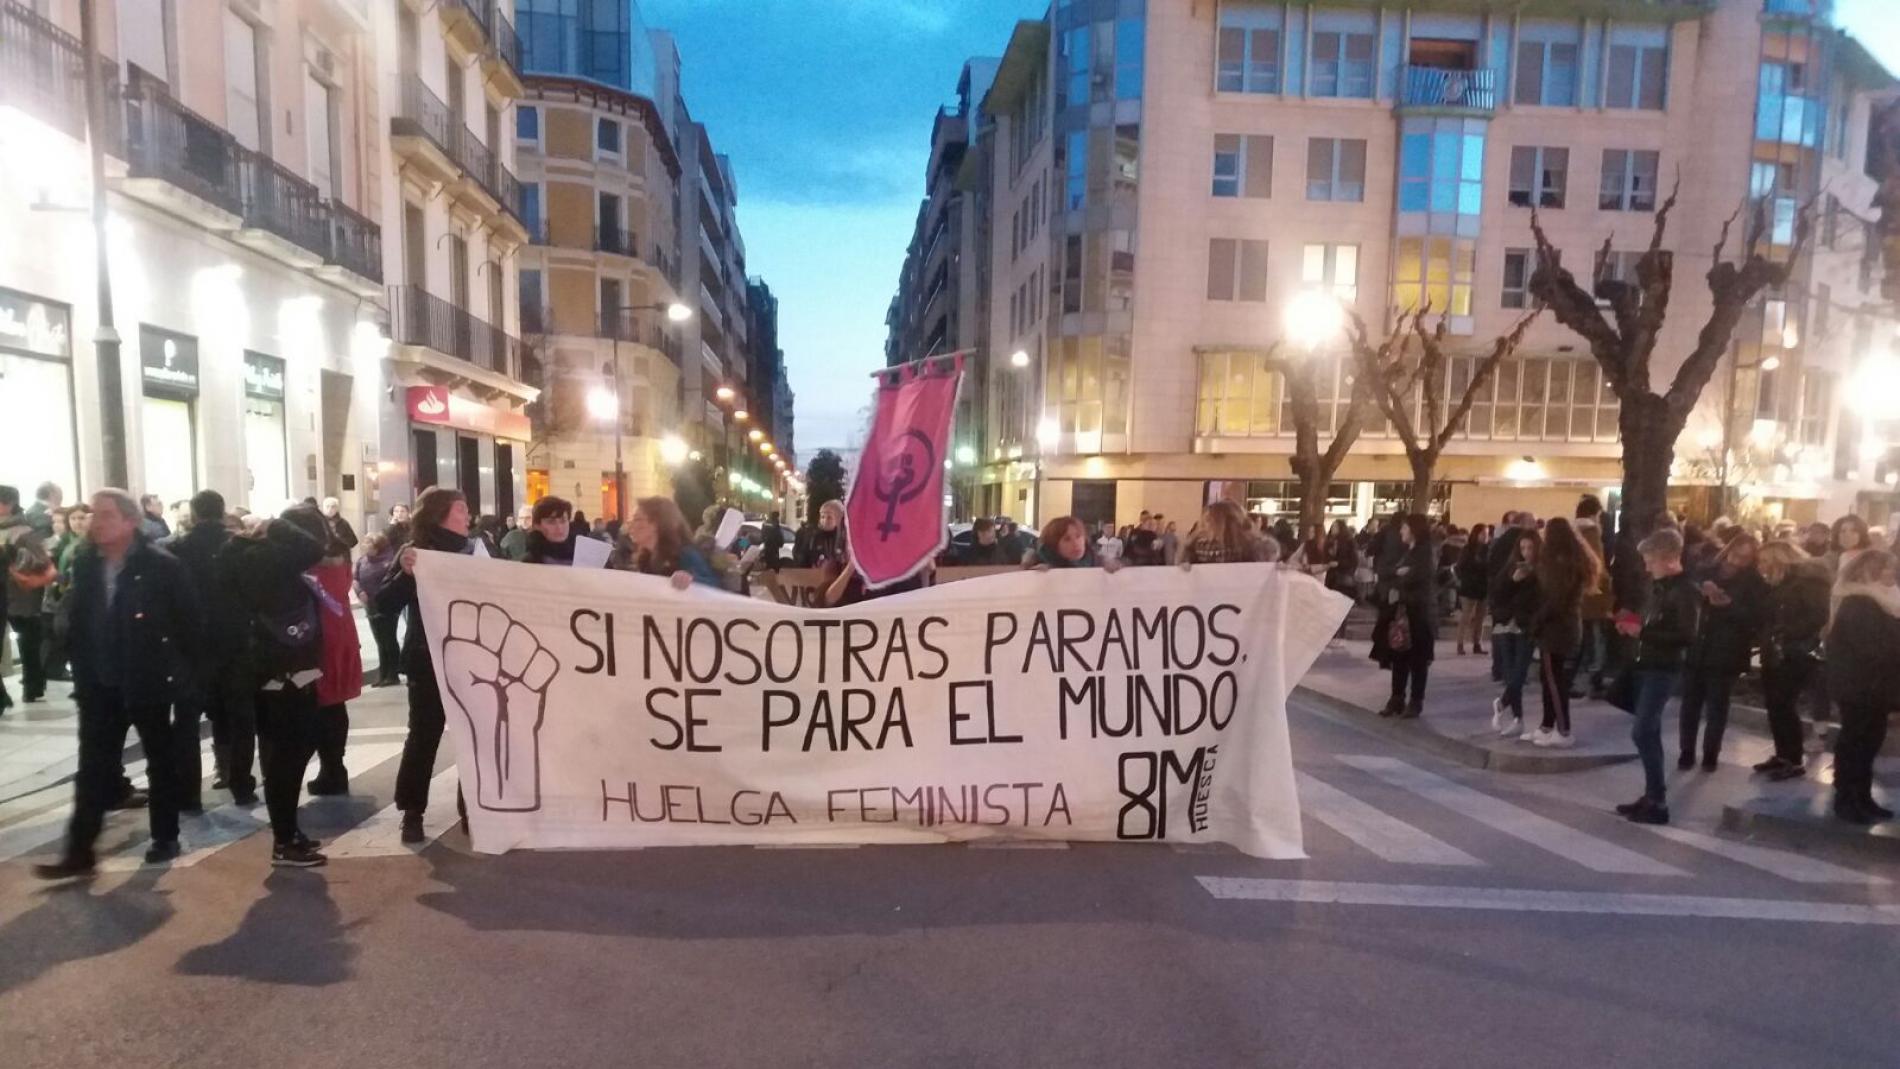 Metro, autobuses y cortes de tráfico en Madrid por la Huelga feminista del  8M